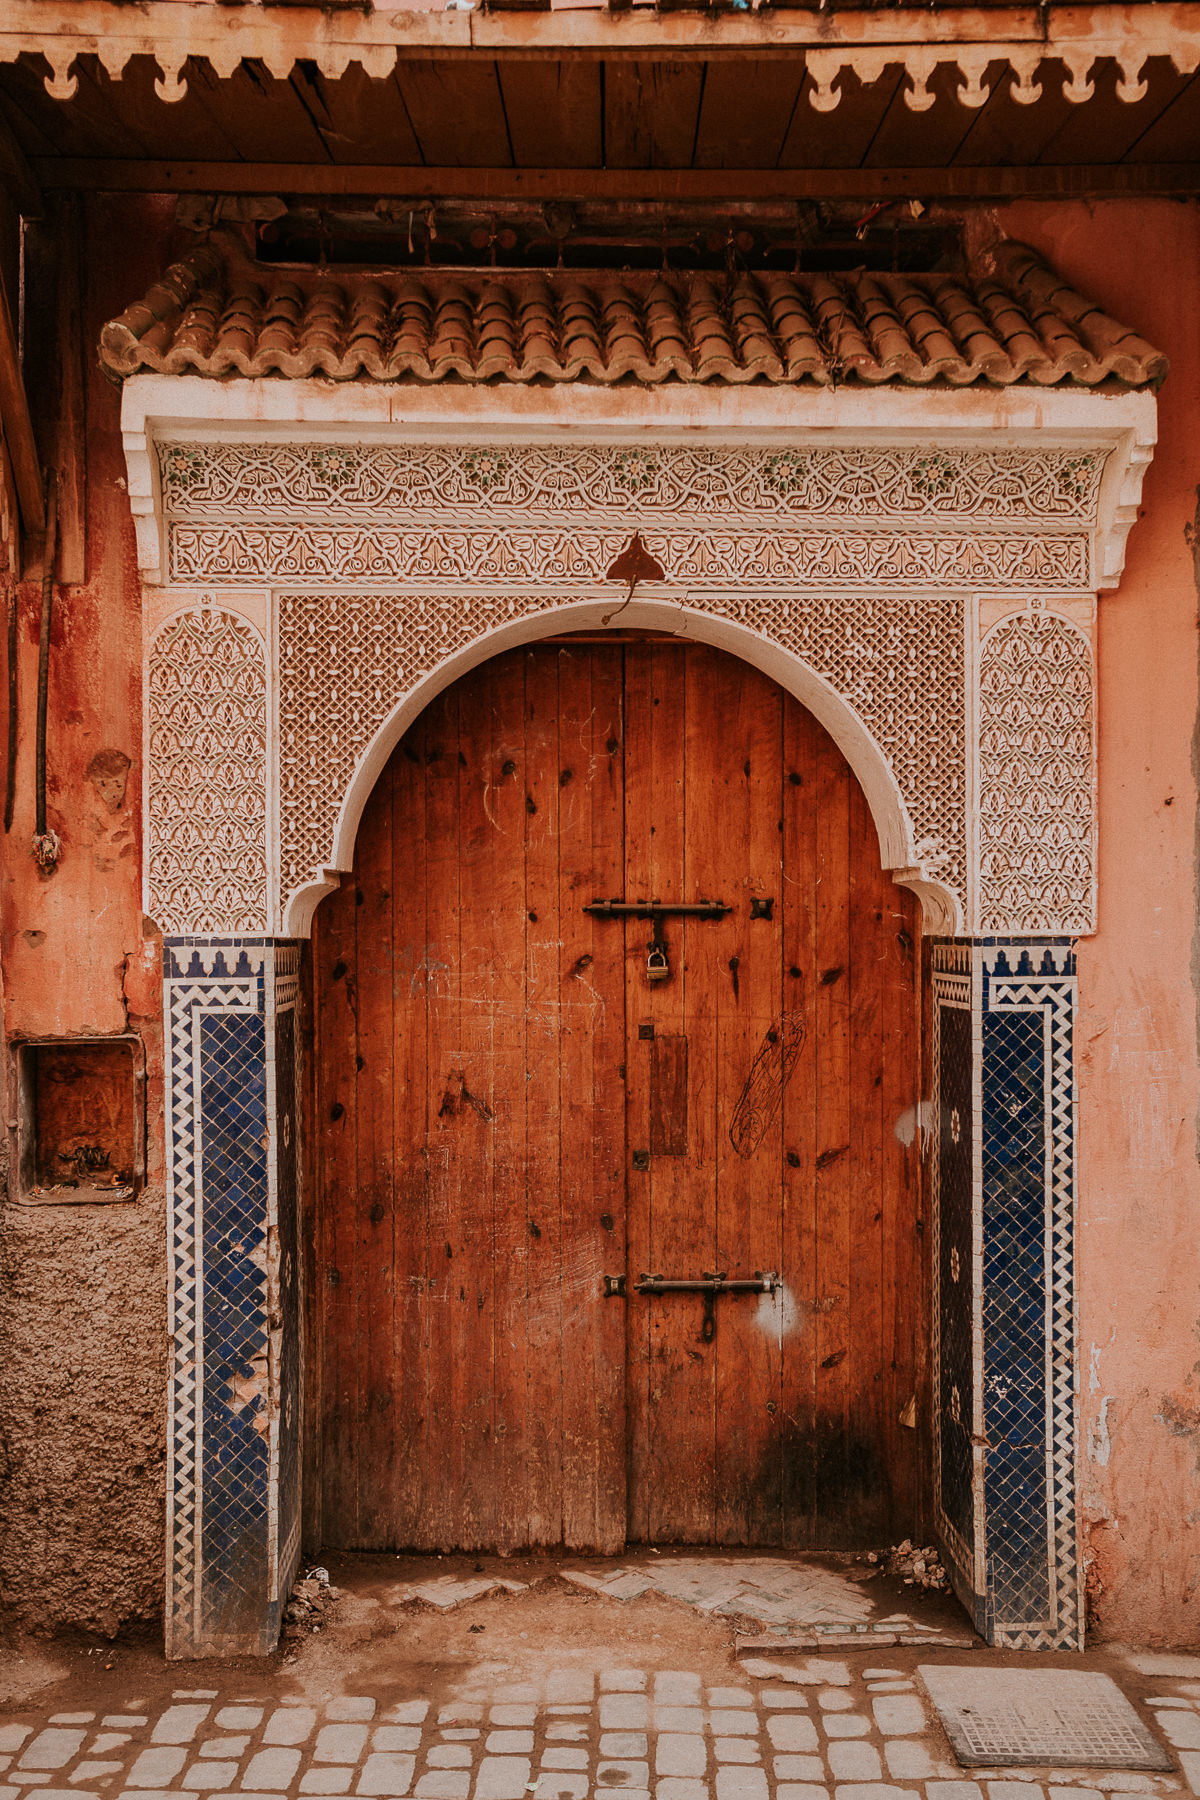 Un mariage à Marrakech - Maria + Thomas - Blog Mariage Madame C